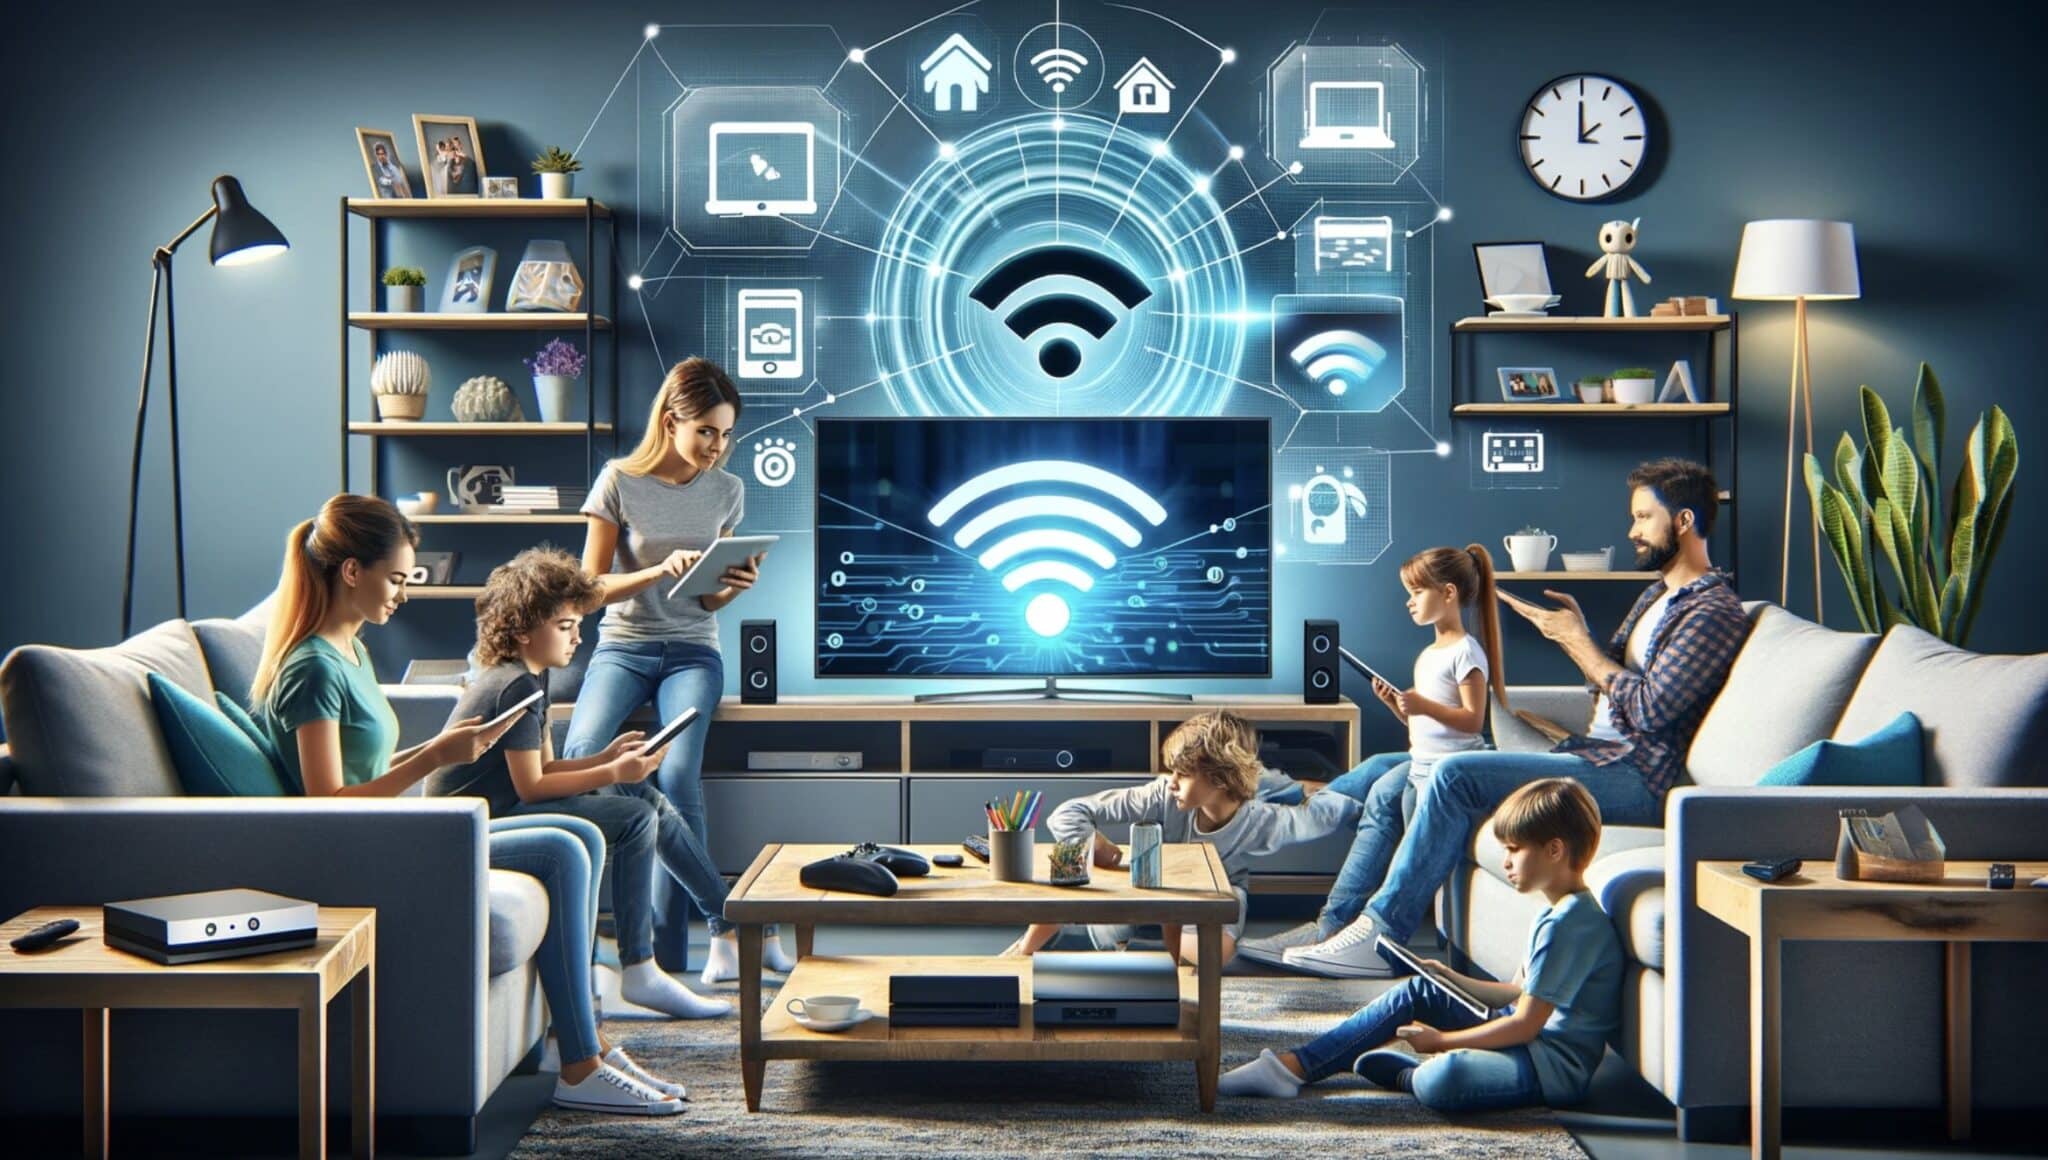 Wi-Fi 7: el futuro de la tecnología inalámbrica